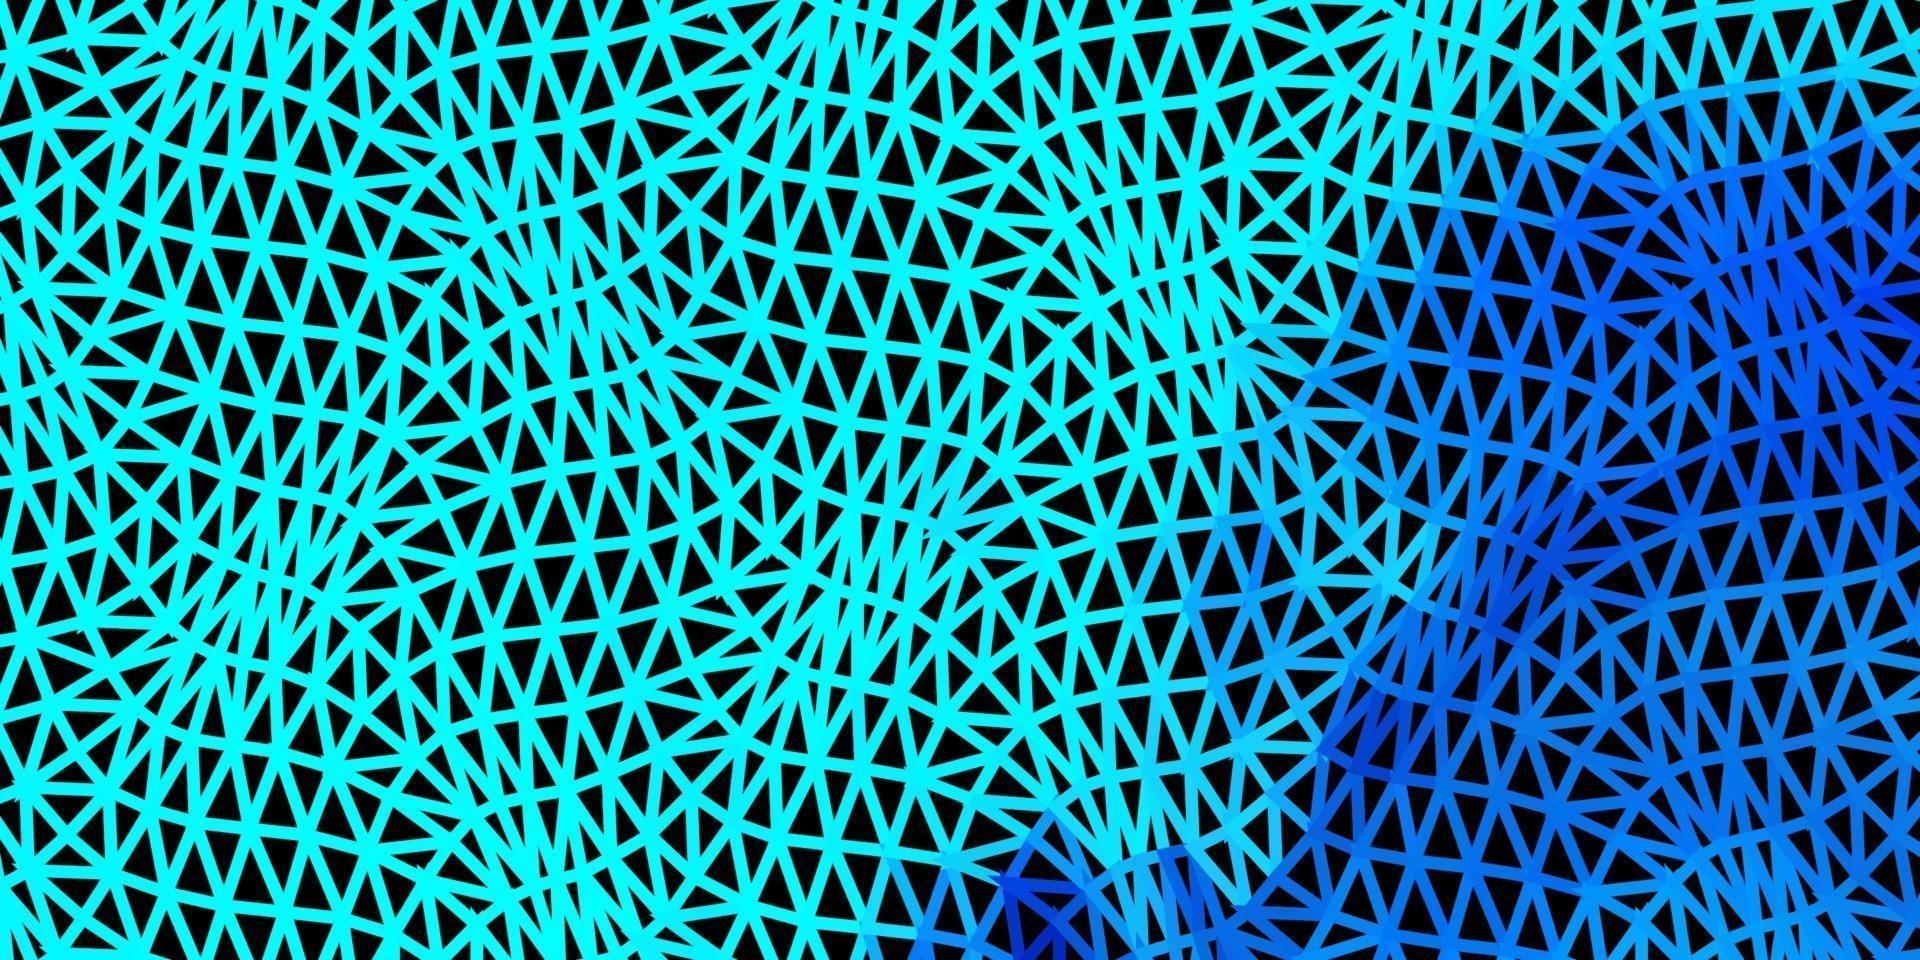 patrón de triángulo abstracto vector azul claro.